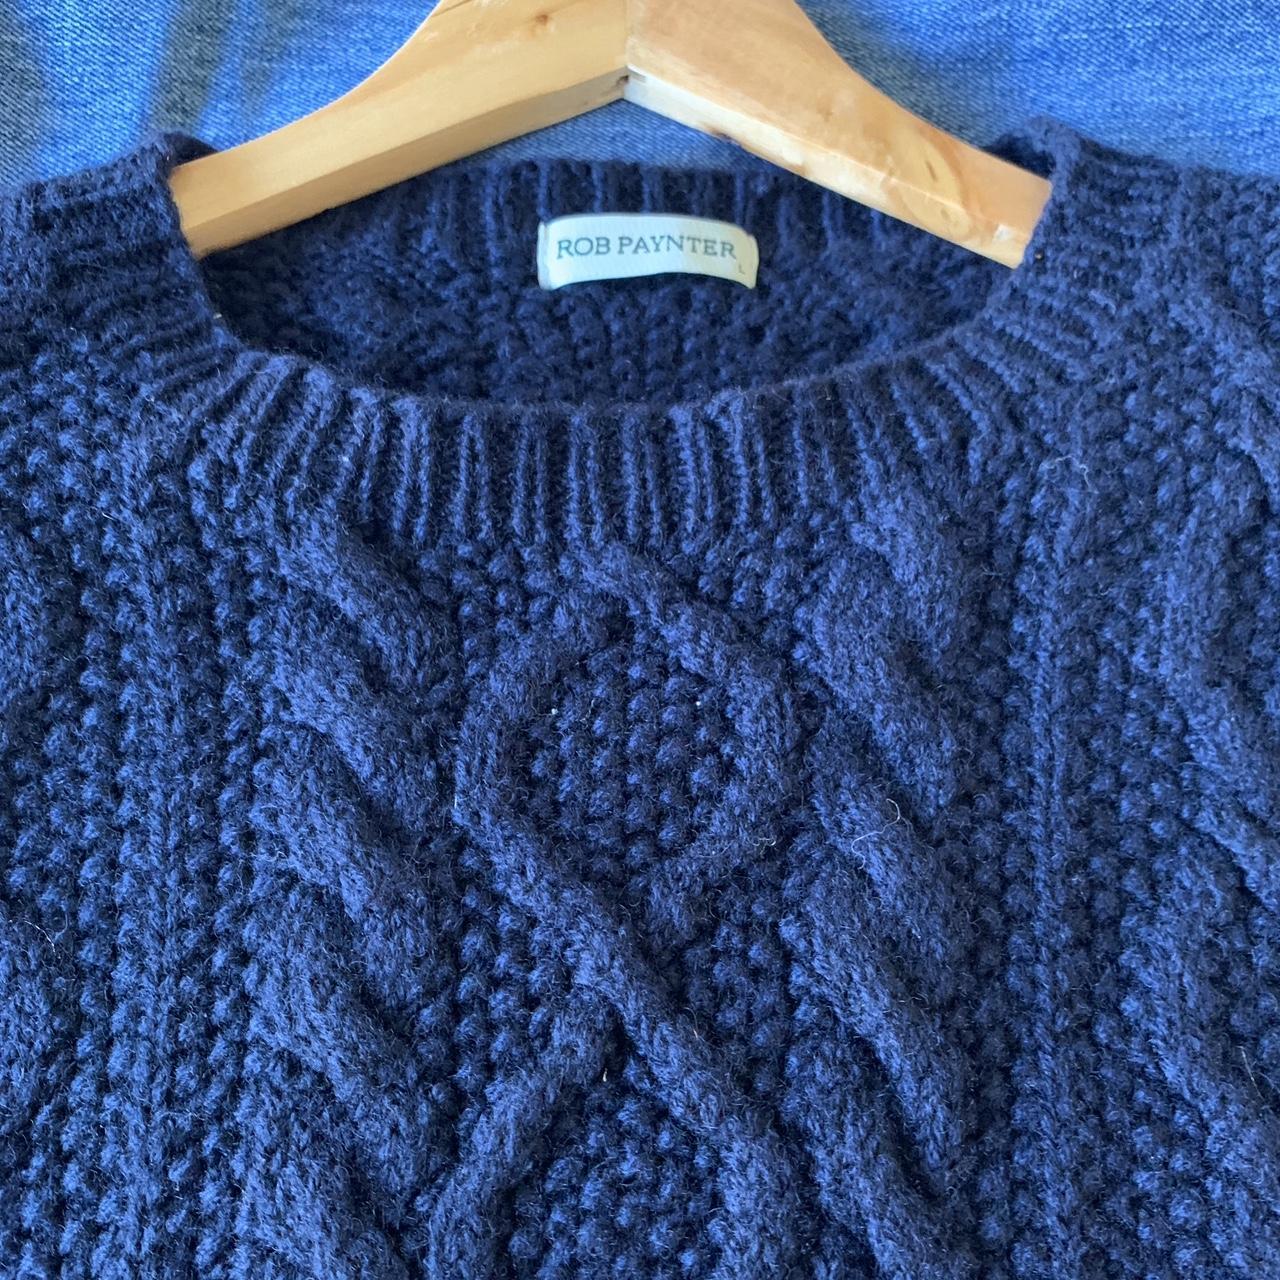 Stunning 100% wool navy knit jumper ‘Rob Paynter’... - Depop